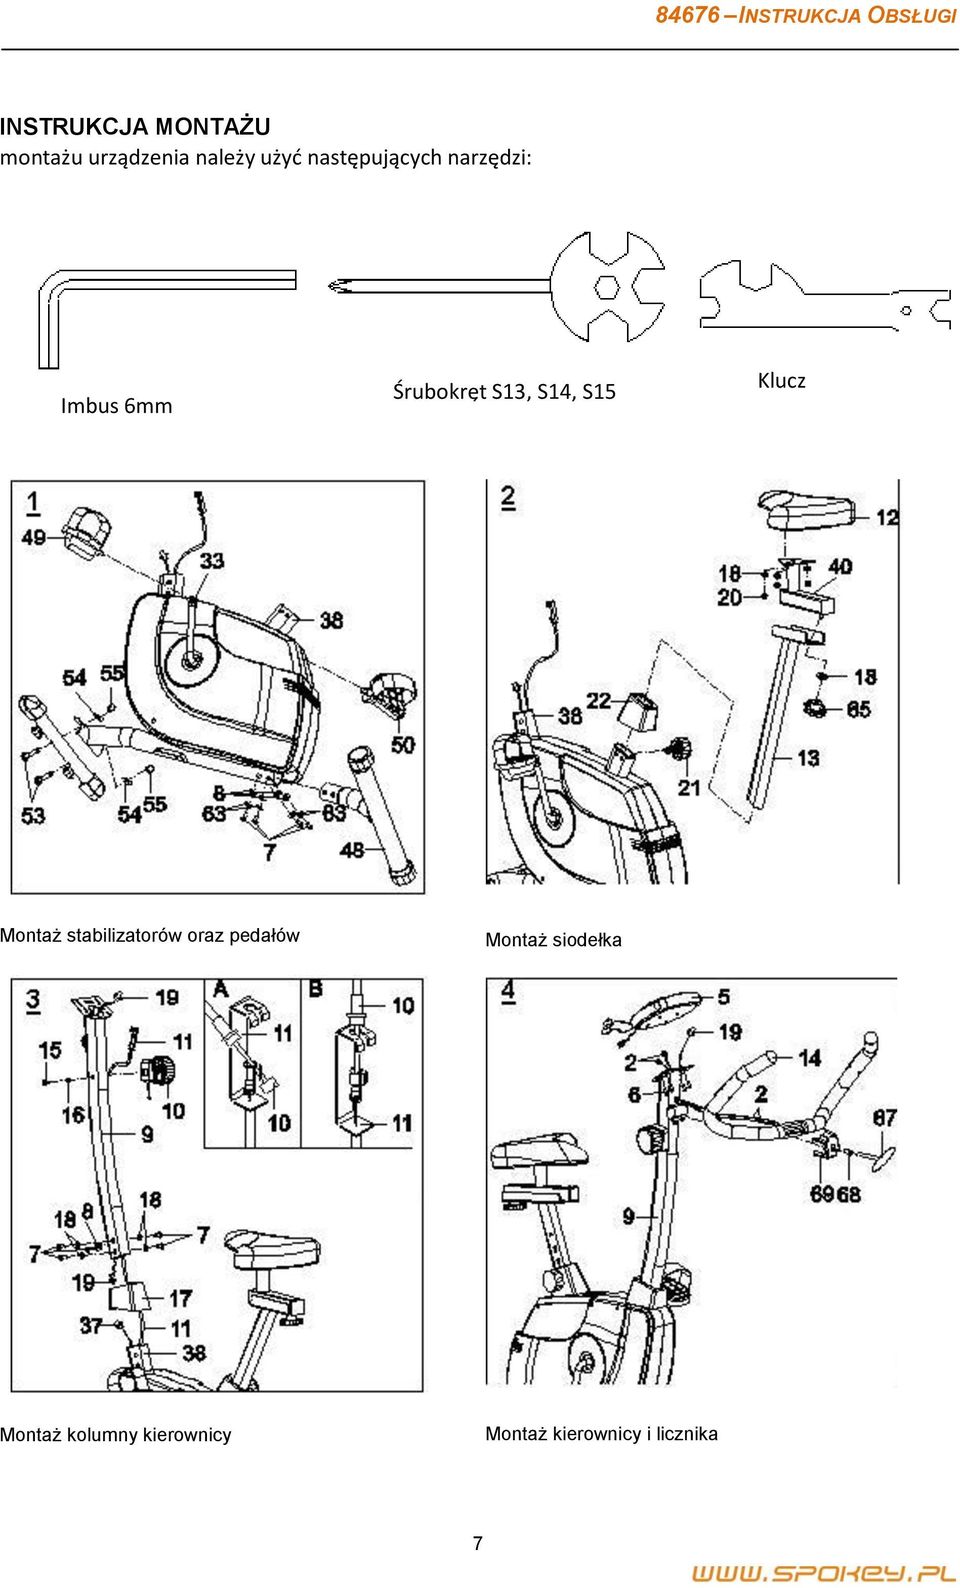 S15 Klucz Montaż stabilizatorów oraz pedałów Montaż